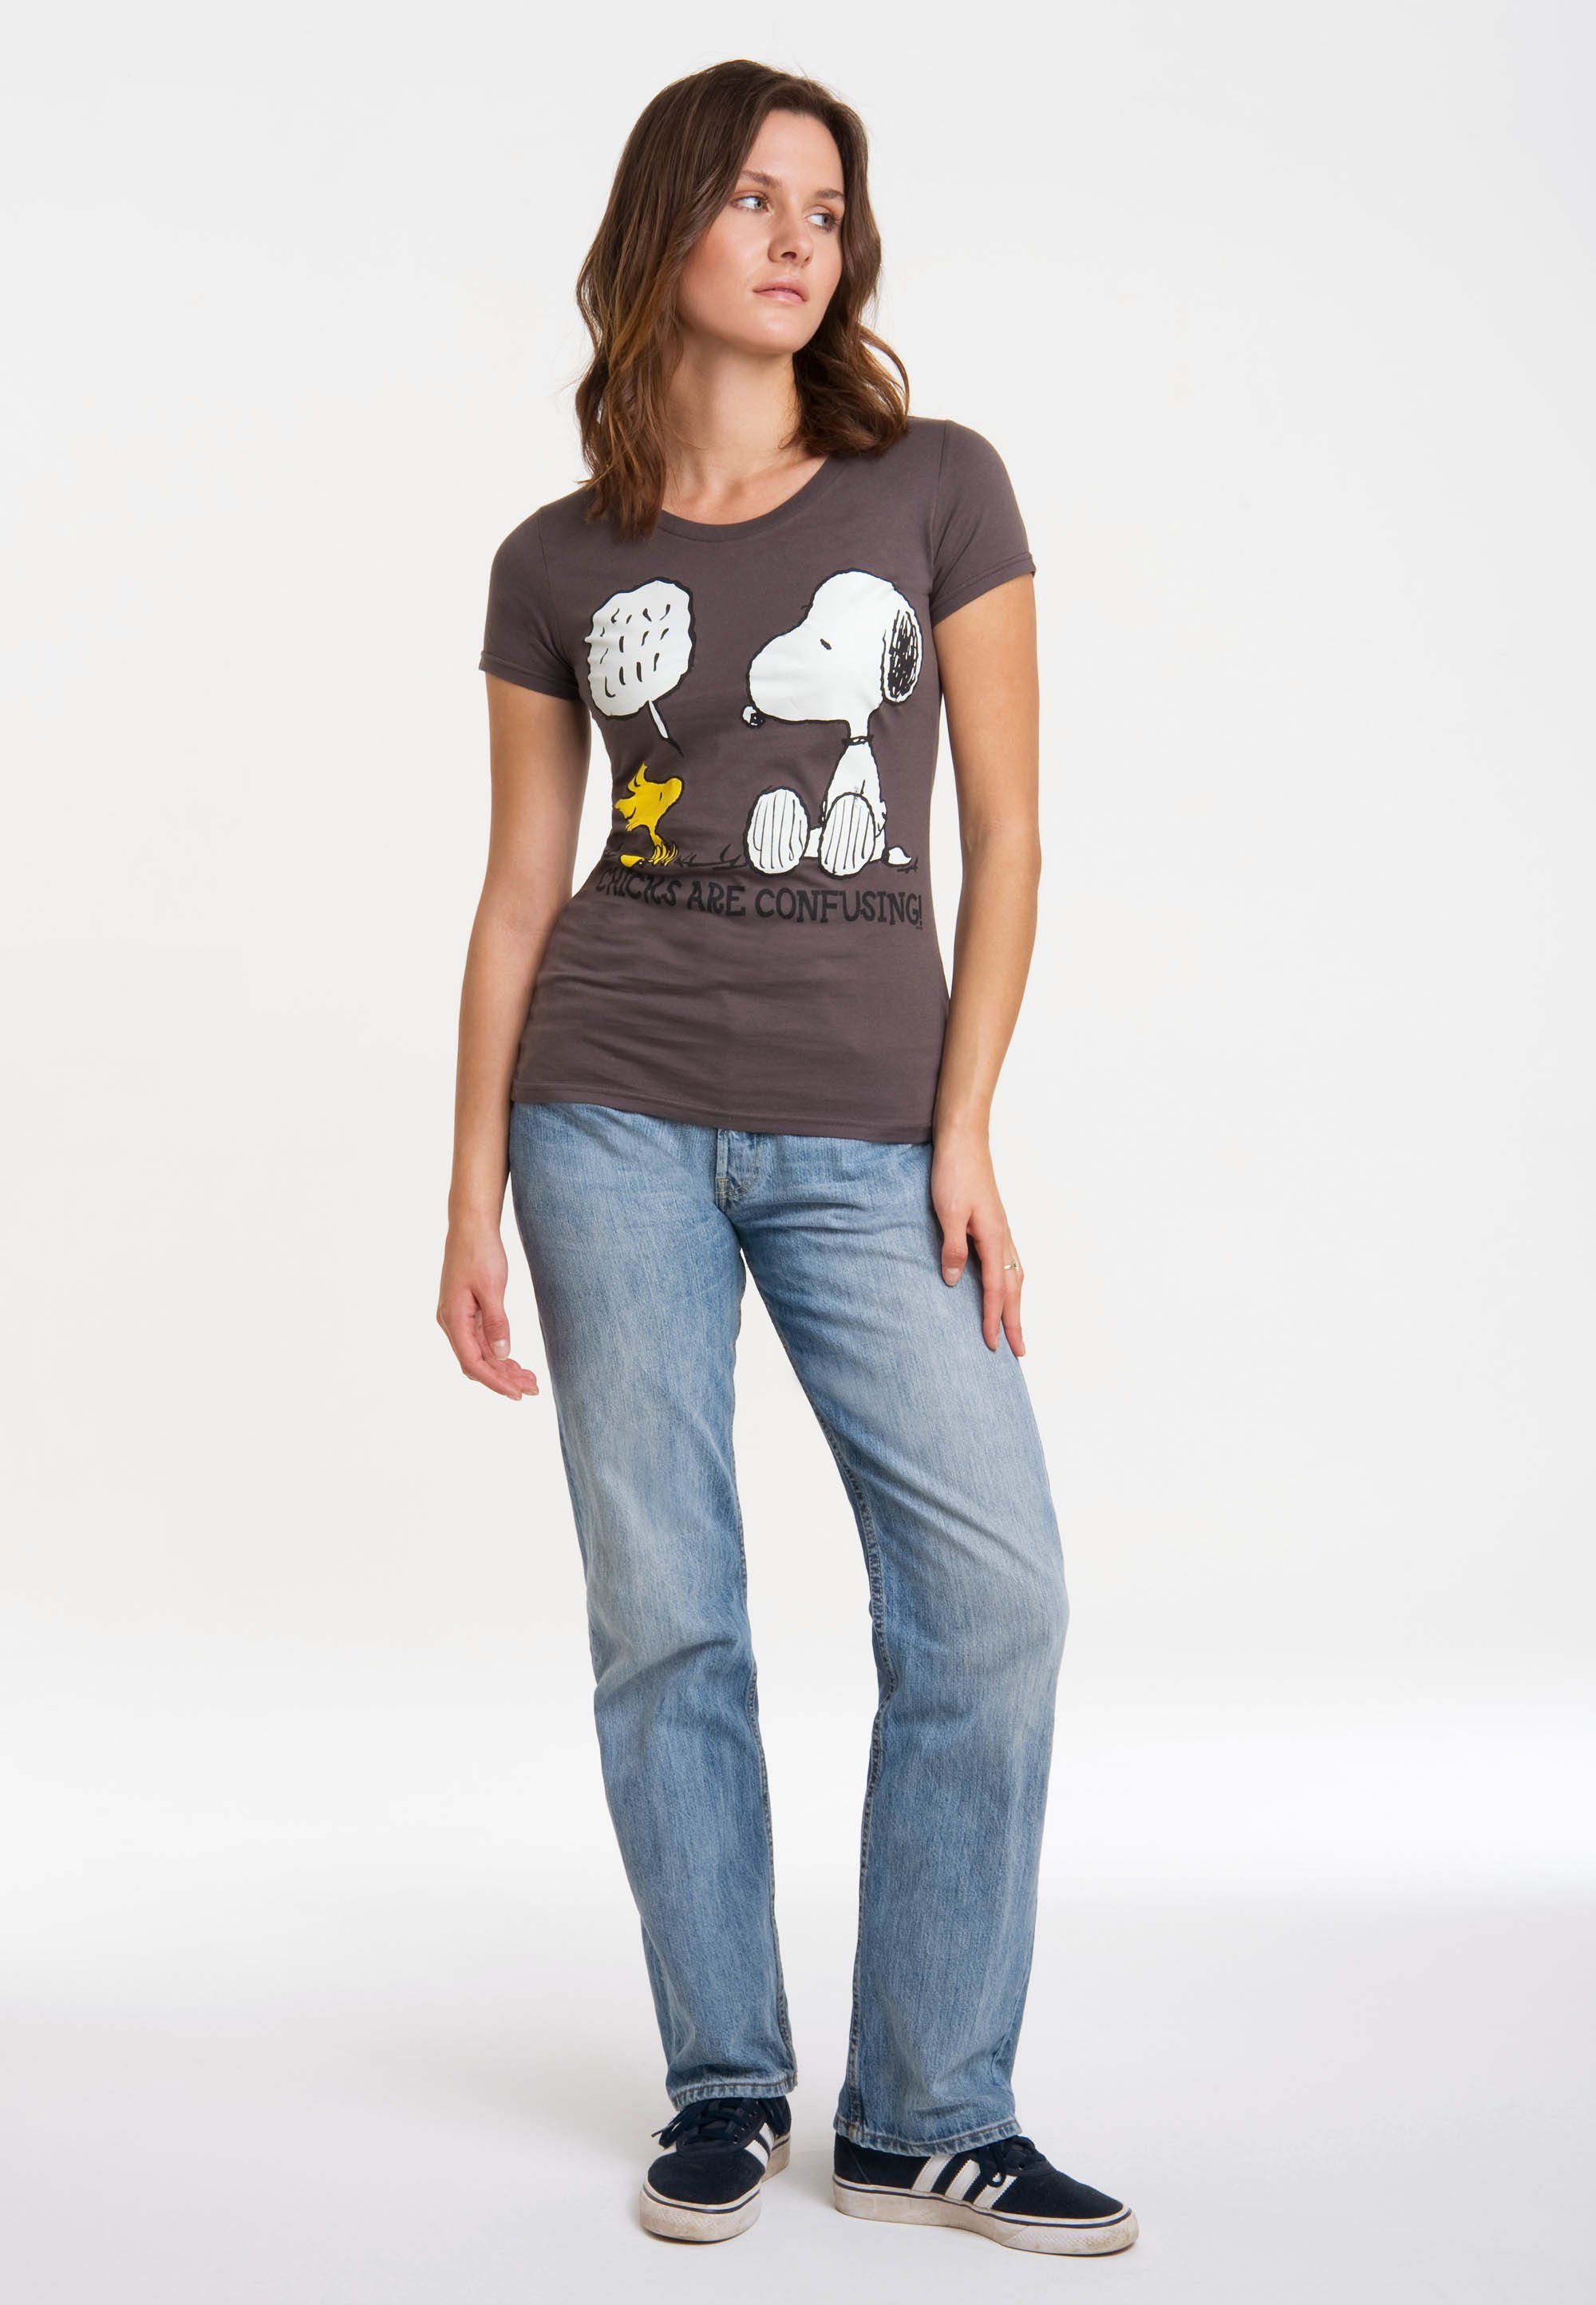 Damen Shirts LOGOSHIRT T-Shirt Snoopy - Peanuts mit niedlichem Frontprint